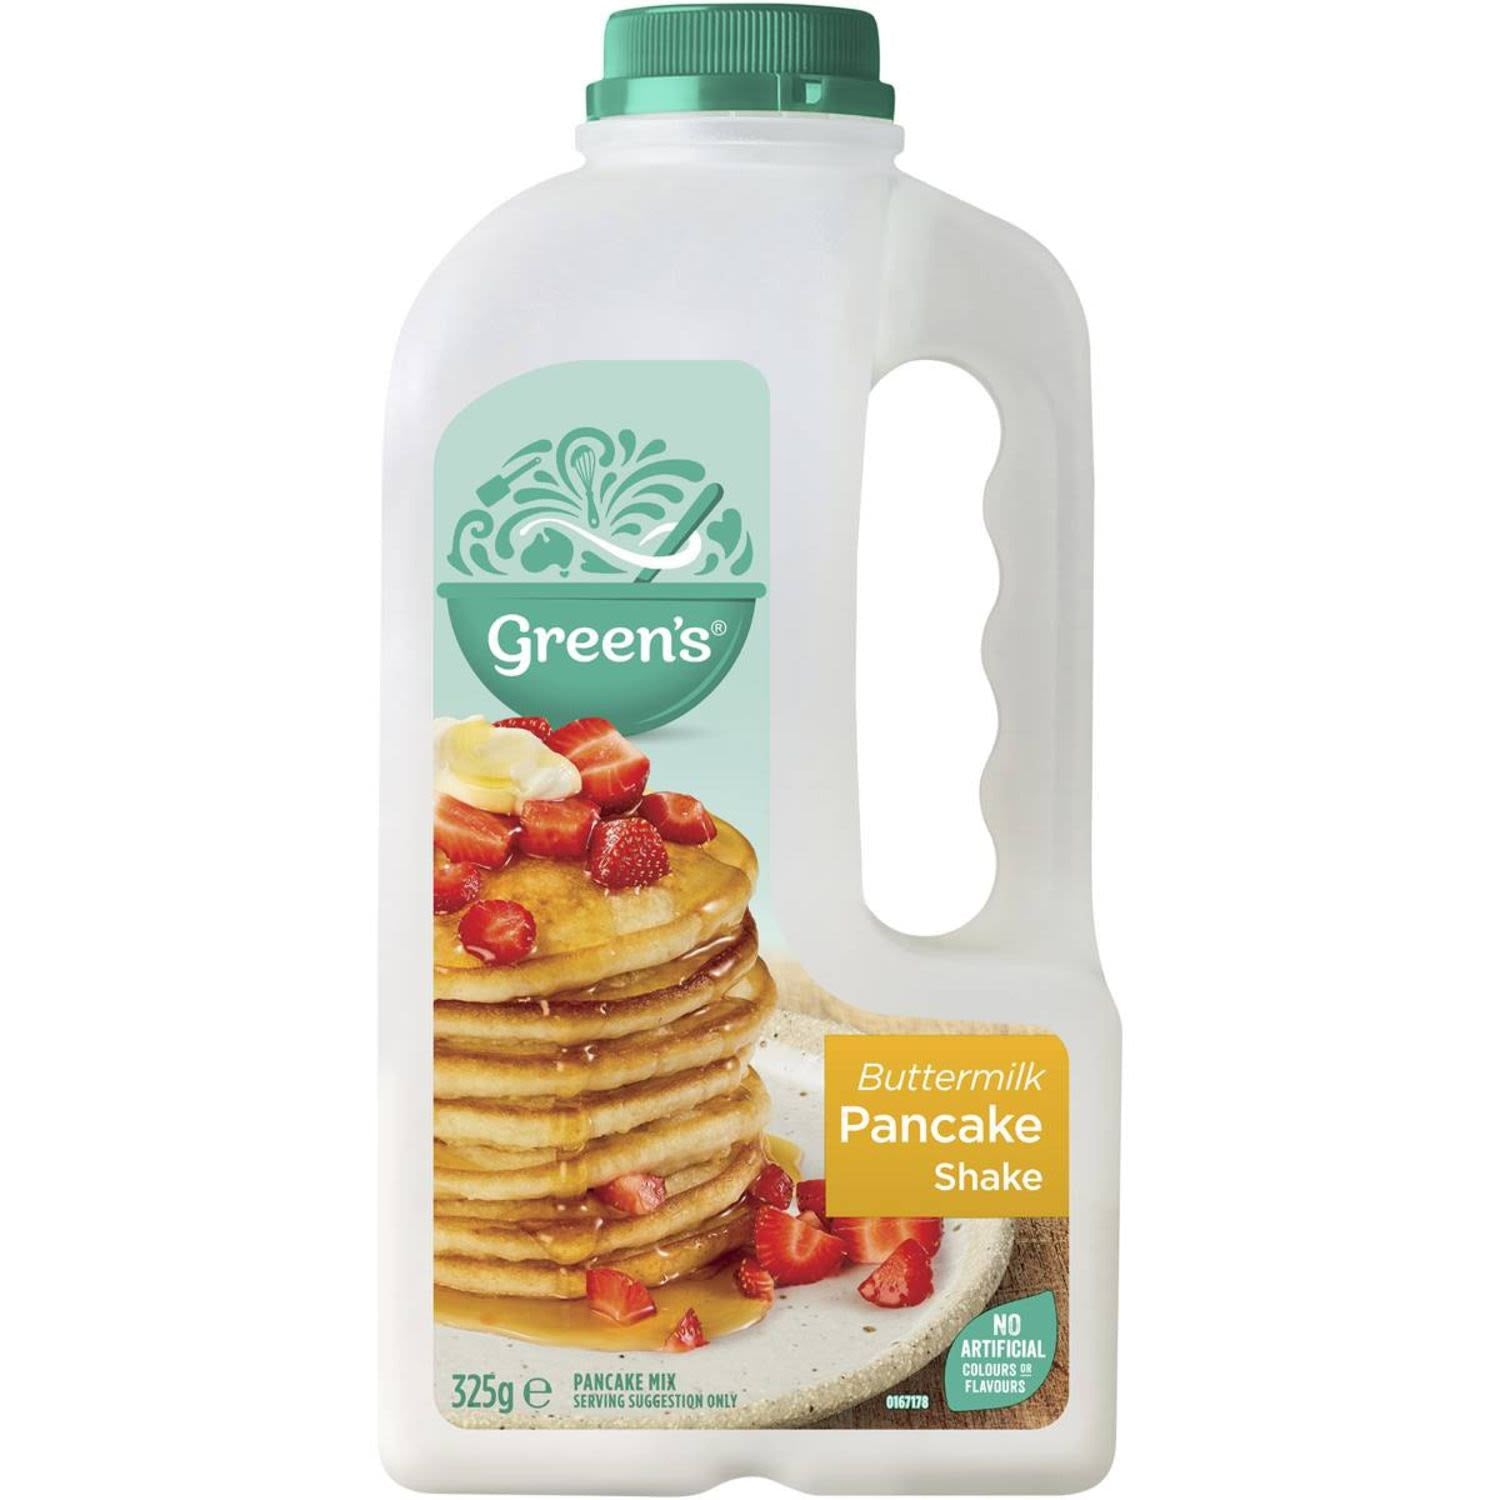 Greens Pancake Mix Buttermilk Shake 325g